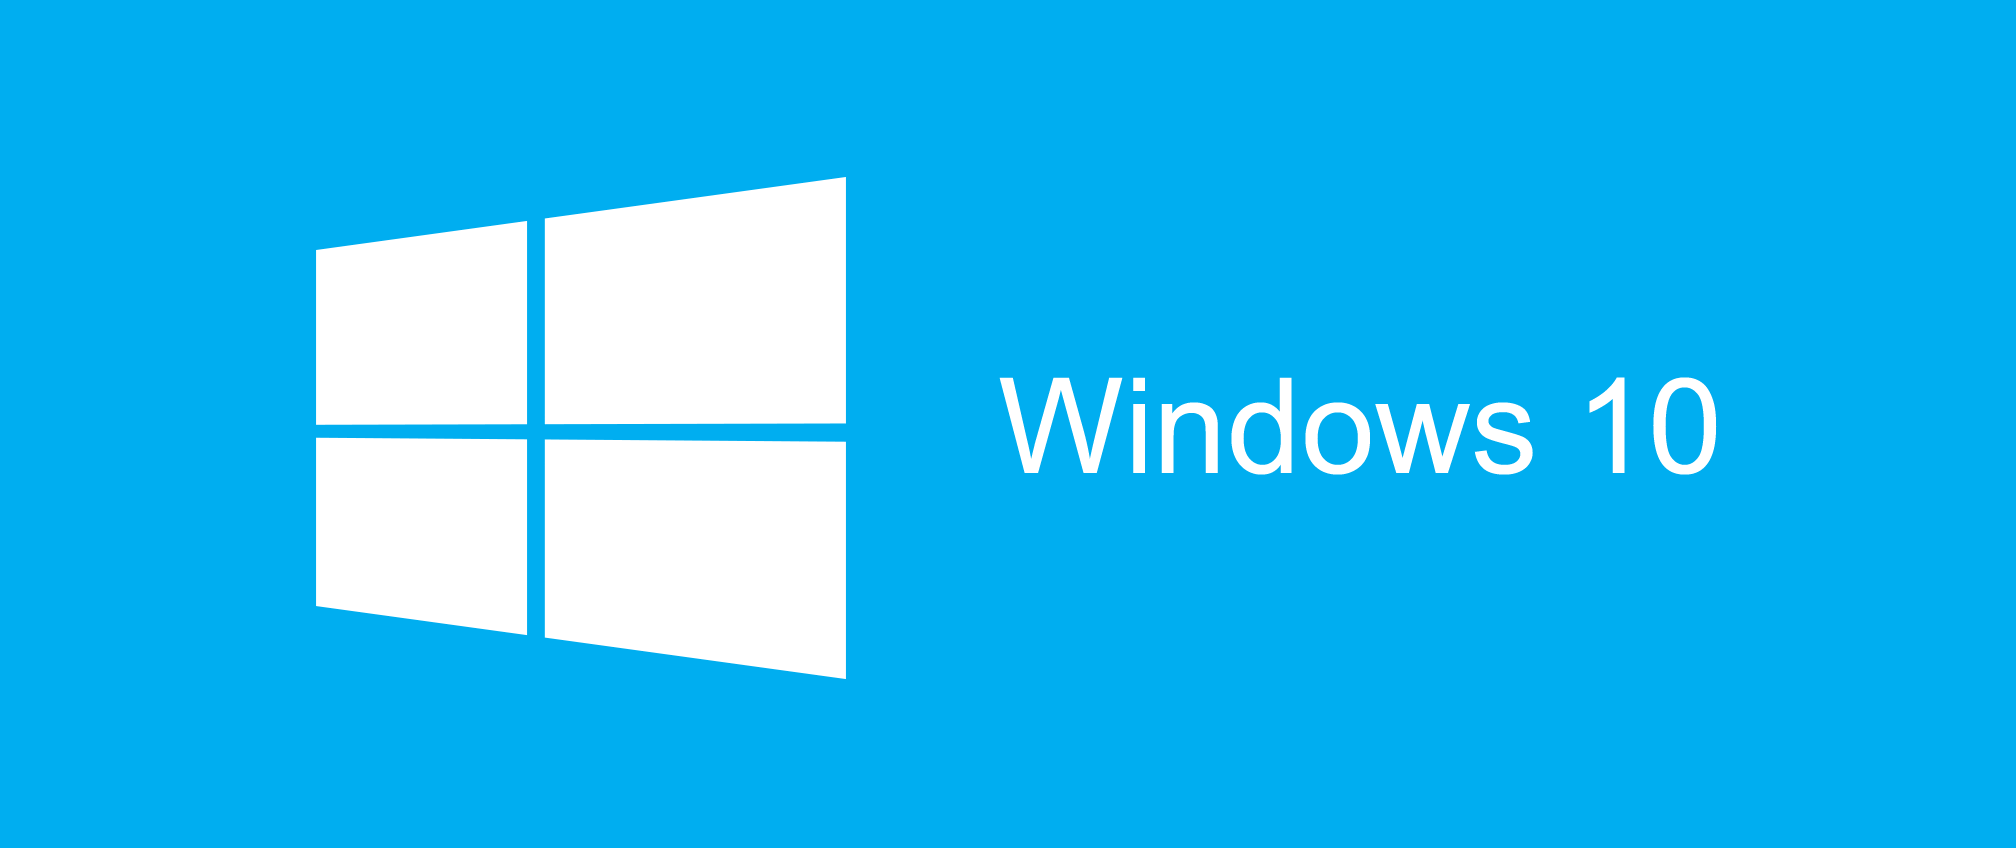 Ska Windows 10 lanseras i slutet av juli?